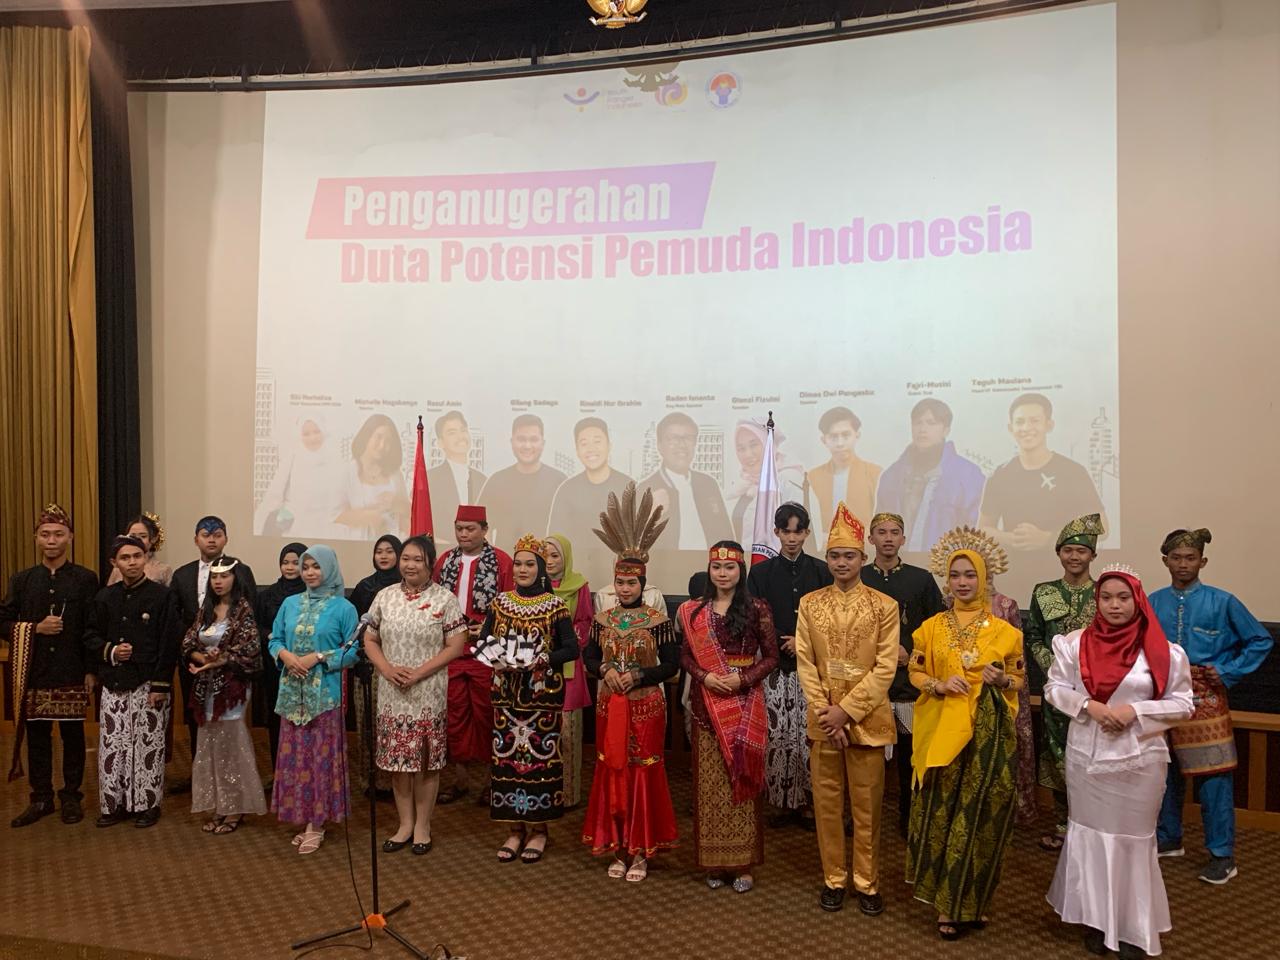 Penobatan Duta Potensi Pemuda Indonesia ke- 3 oleh YRI (Youth Ranger Indonesia) bersama Deputi Kemenpora RI.